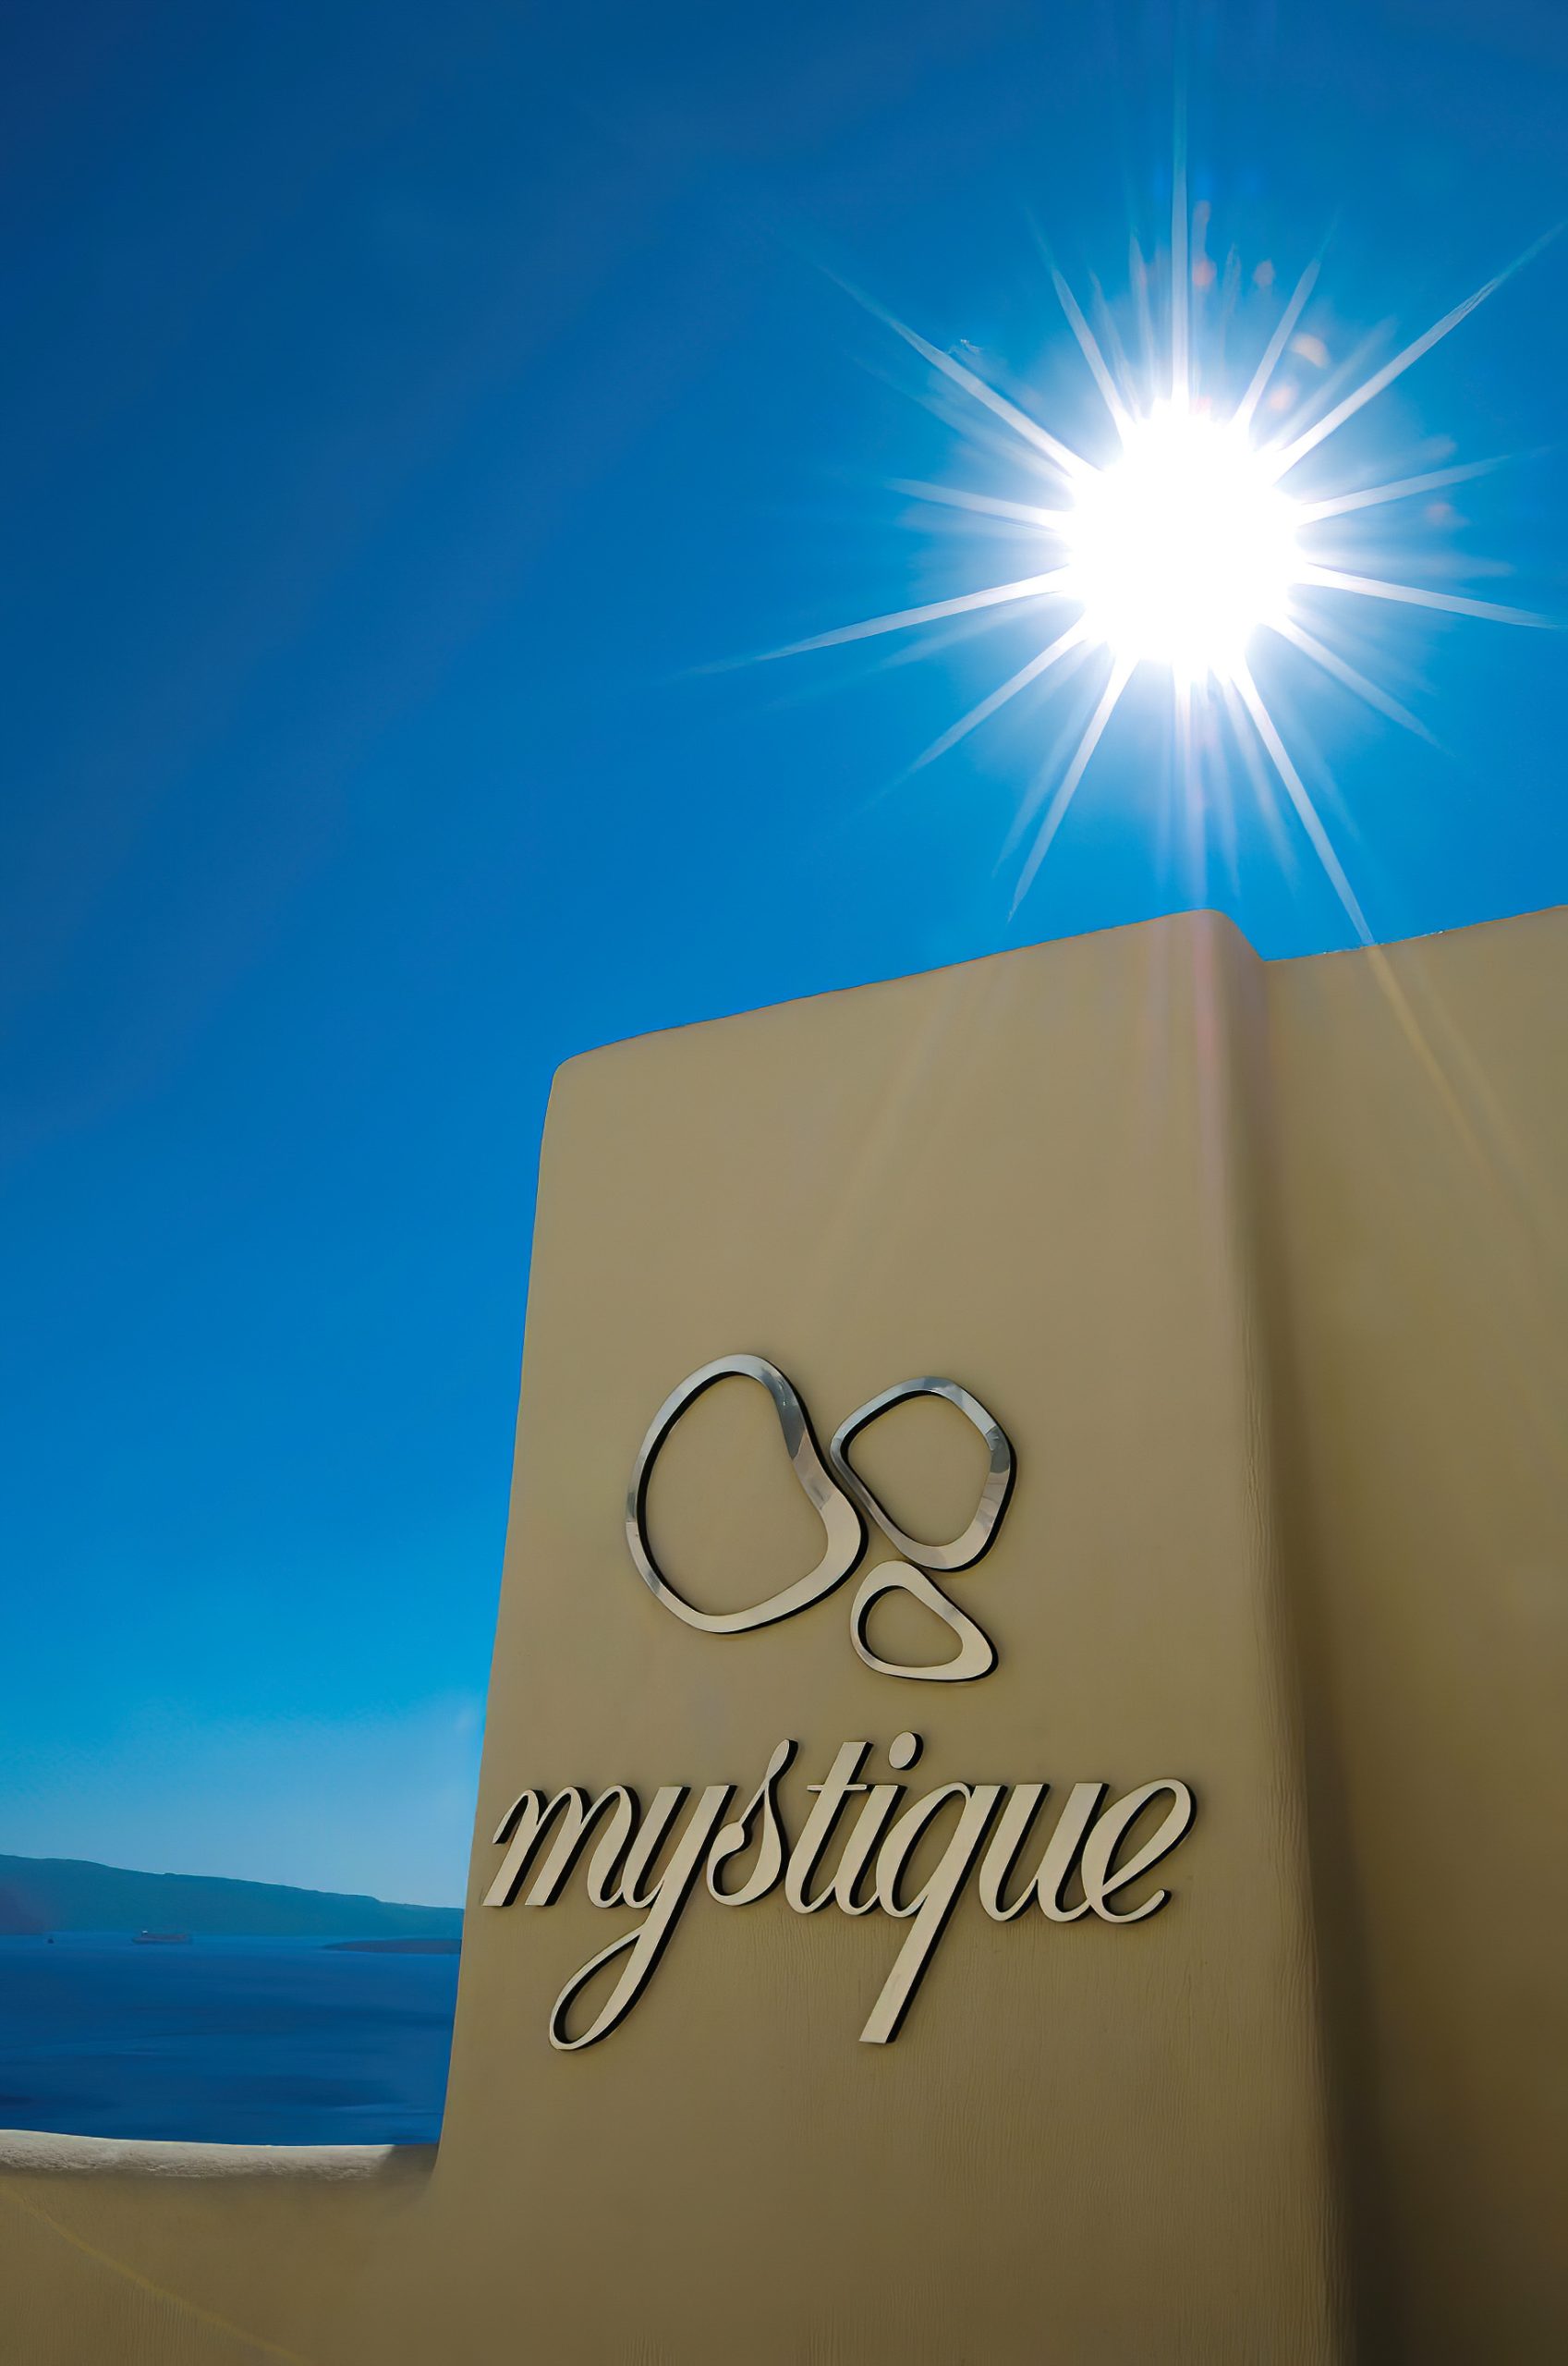 Mystique Hotel Santorini – Oia, Santorini Island, Greece – Mystique Sign